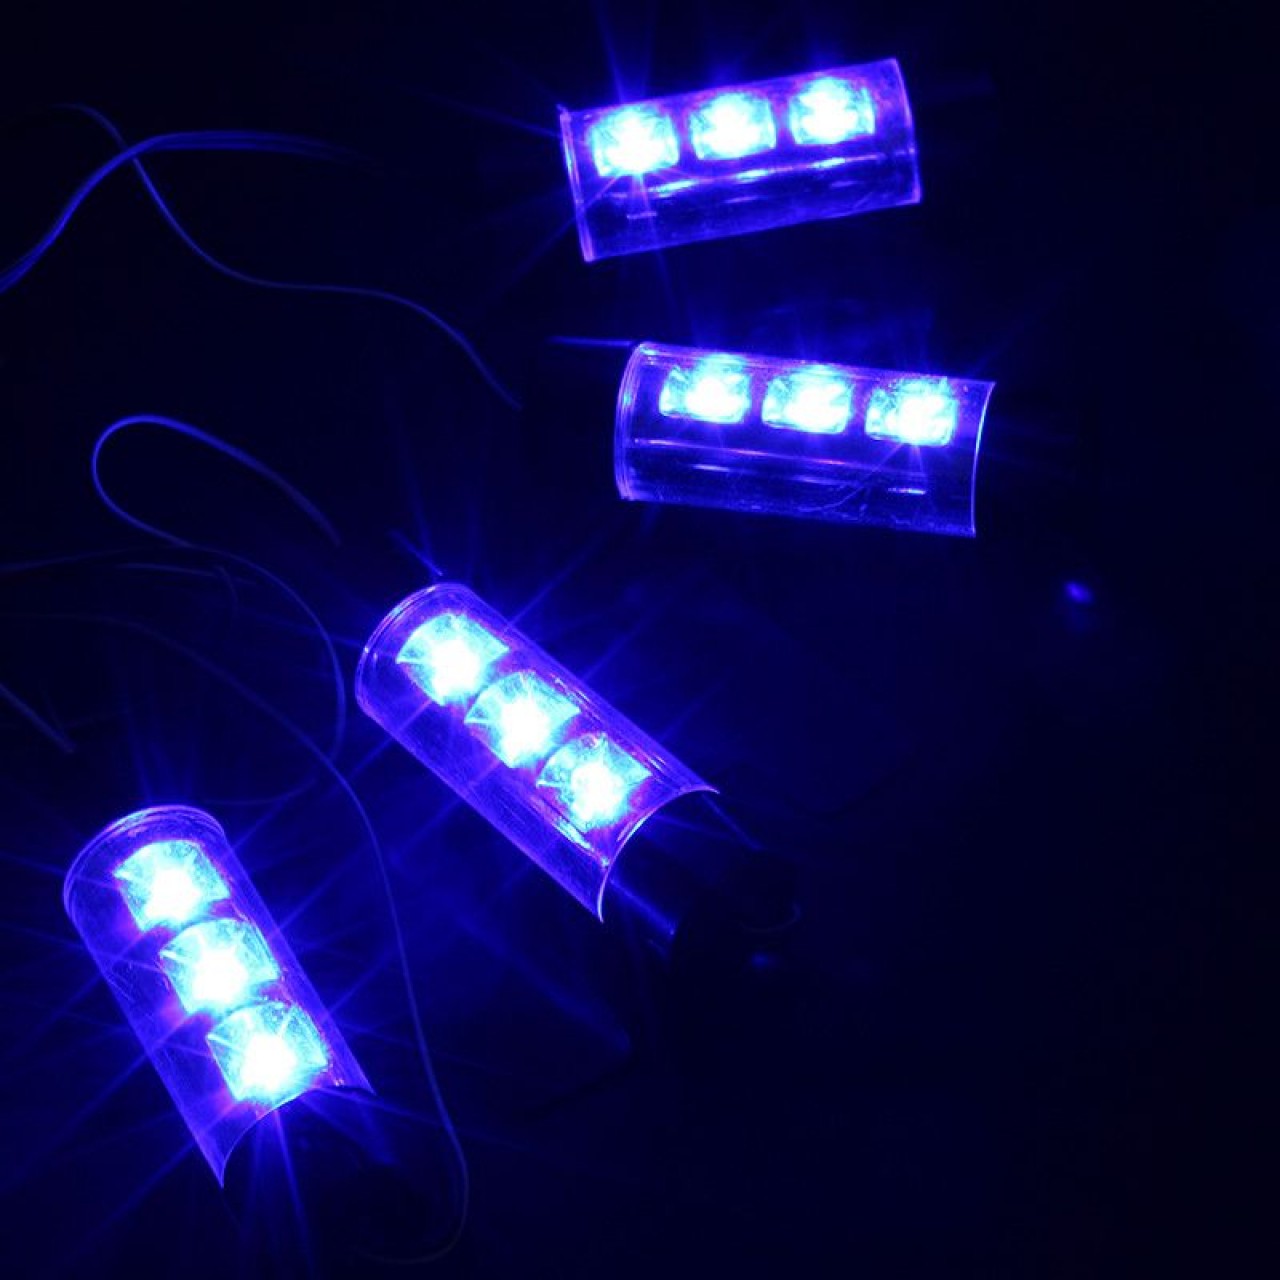 Σετ φώτα LED 3W/12V για τη διακόσμηση του αυτοκινήτου σε μπλε χρώμα - 4τμχ - 4634 - OEM